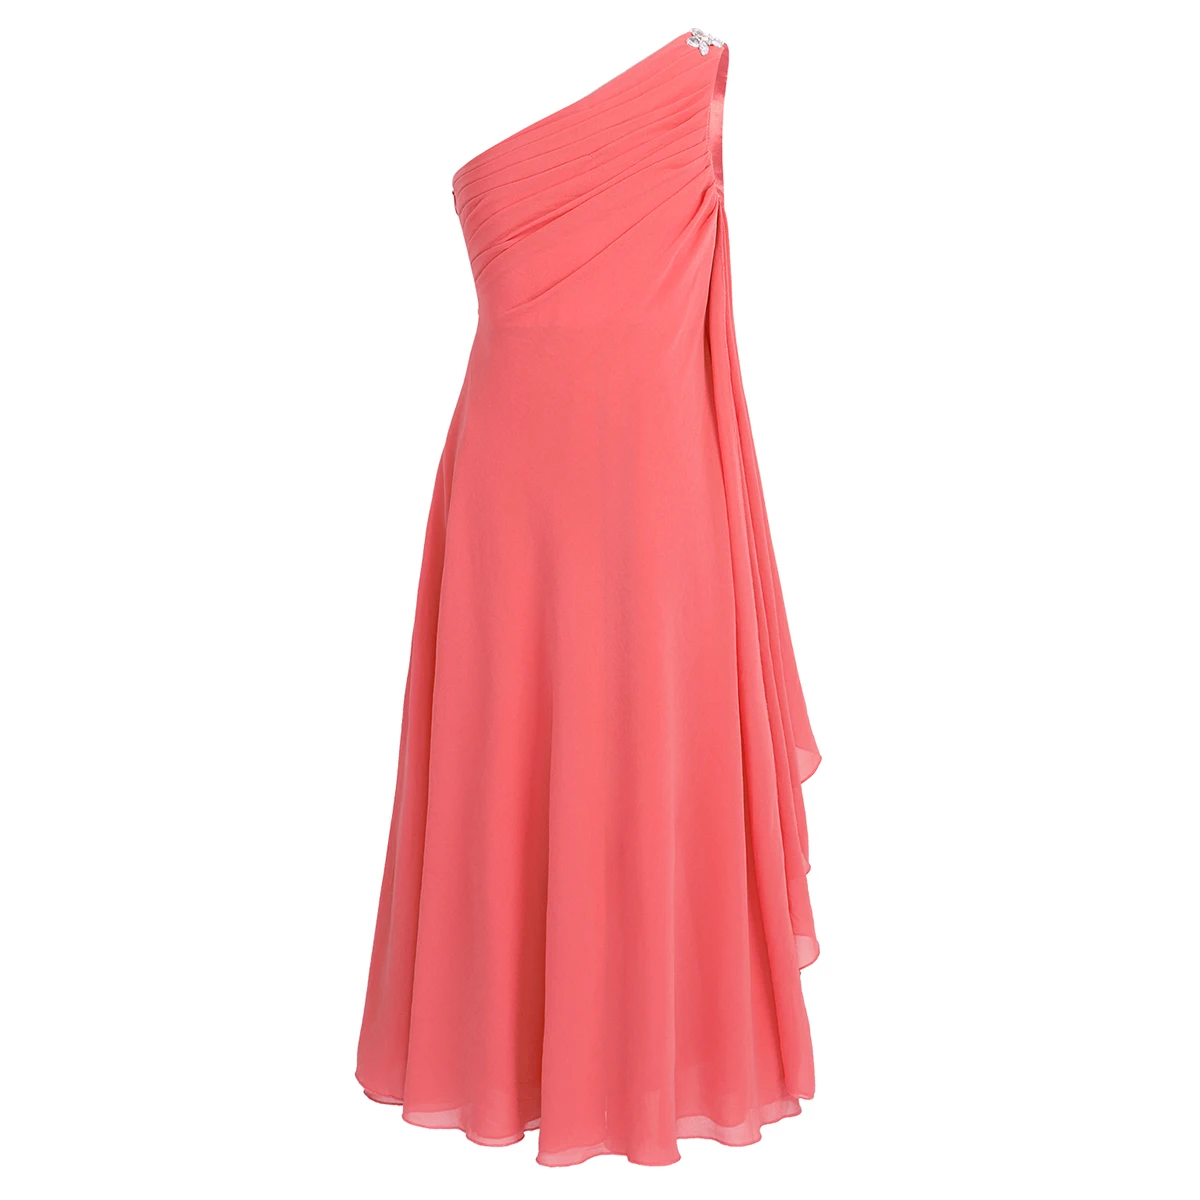 IEFiEL/Детское платье с цветочным узором для девочек детское шифоновое платье принцессы на одно плечо, стразы Бальные платья для свадебной вечеринки - Цвет: Coral